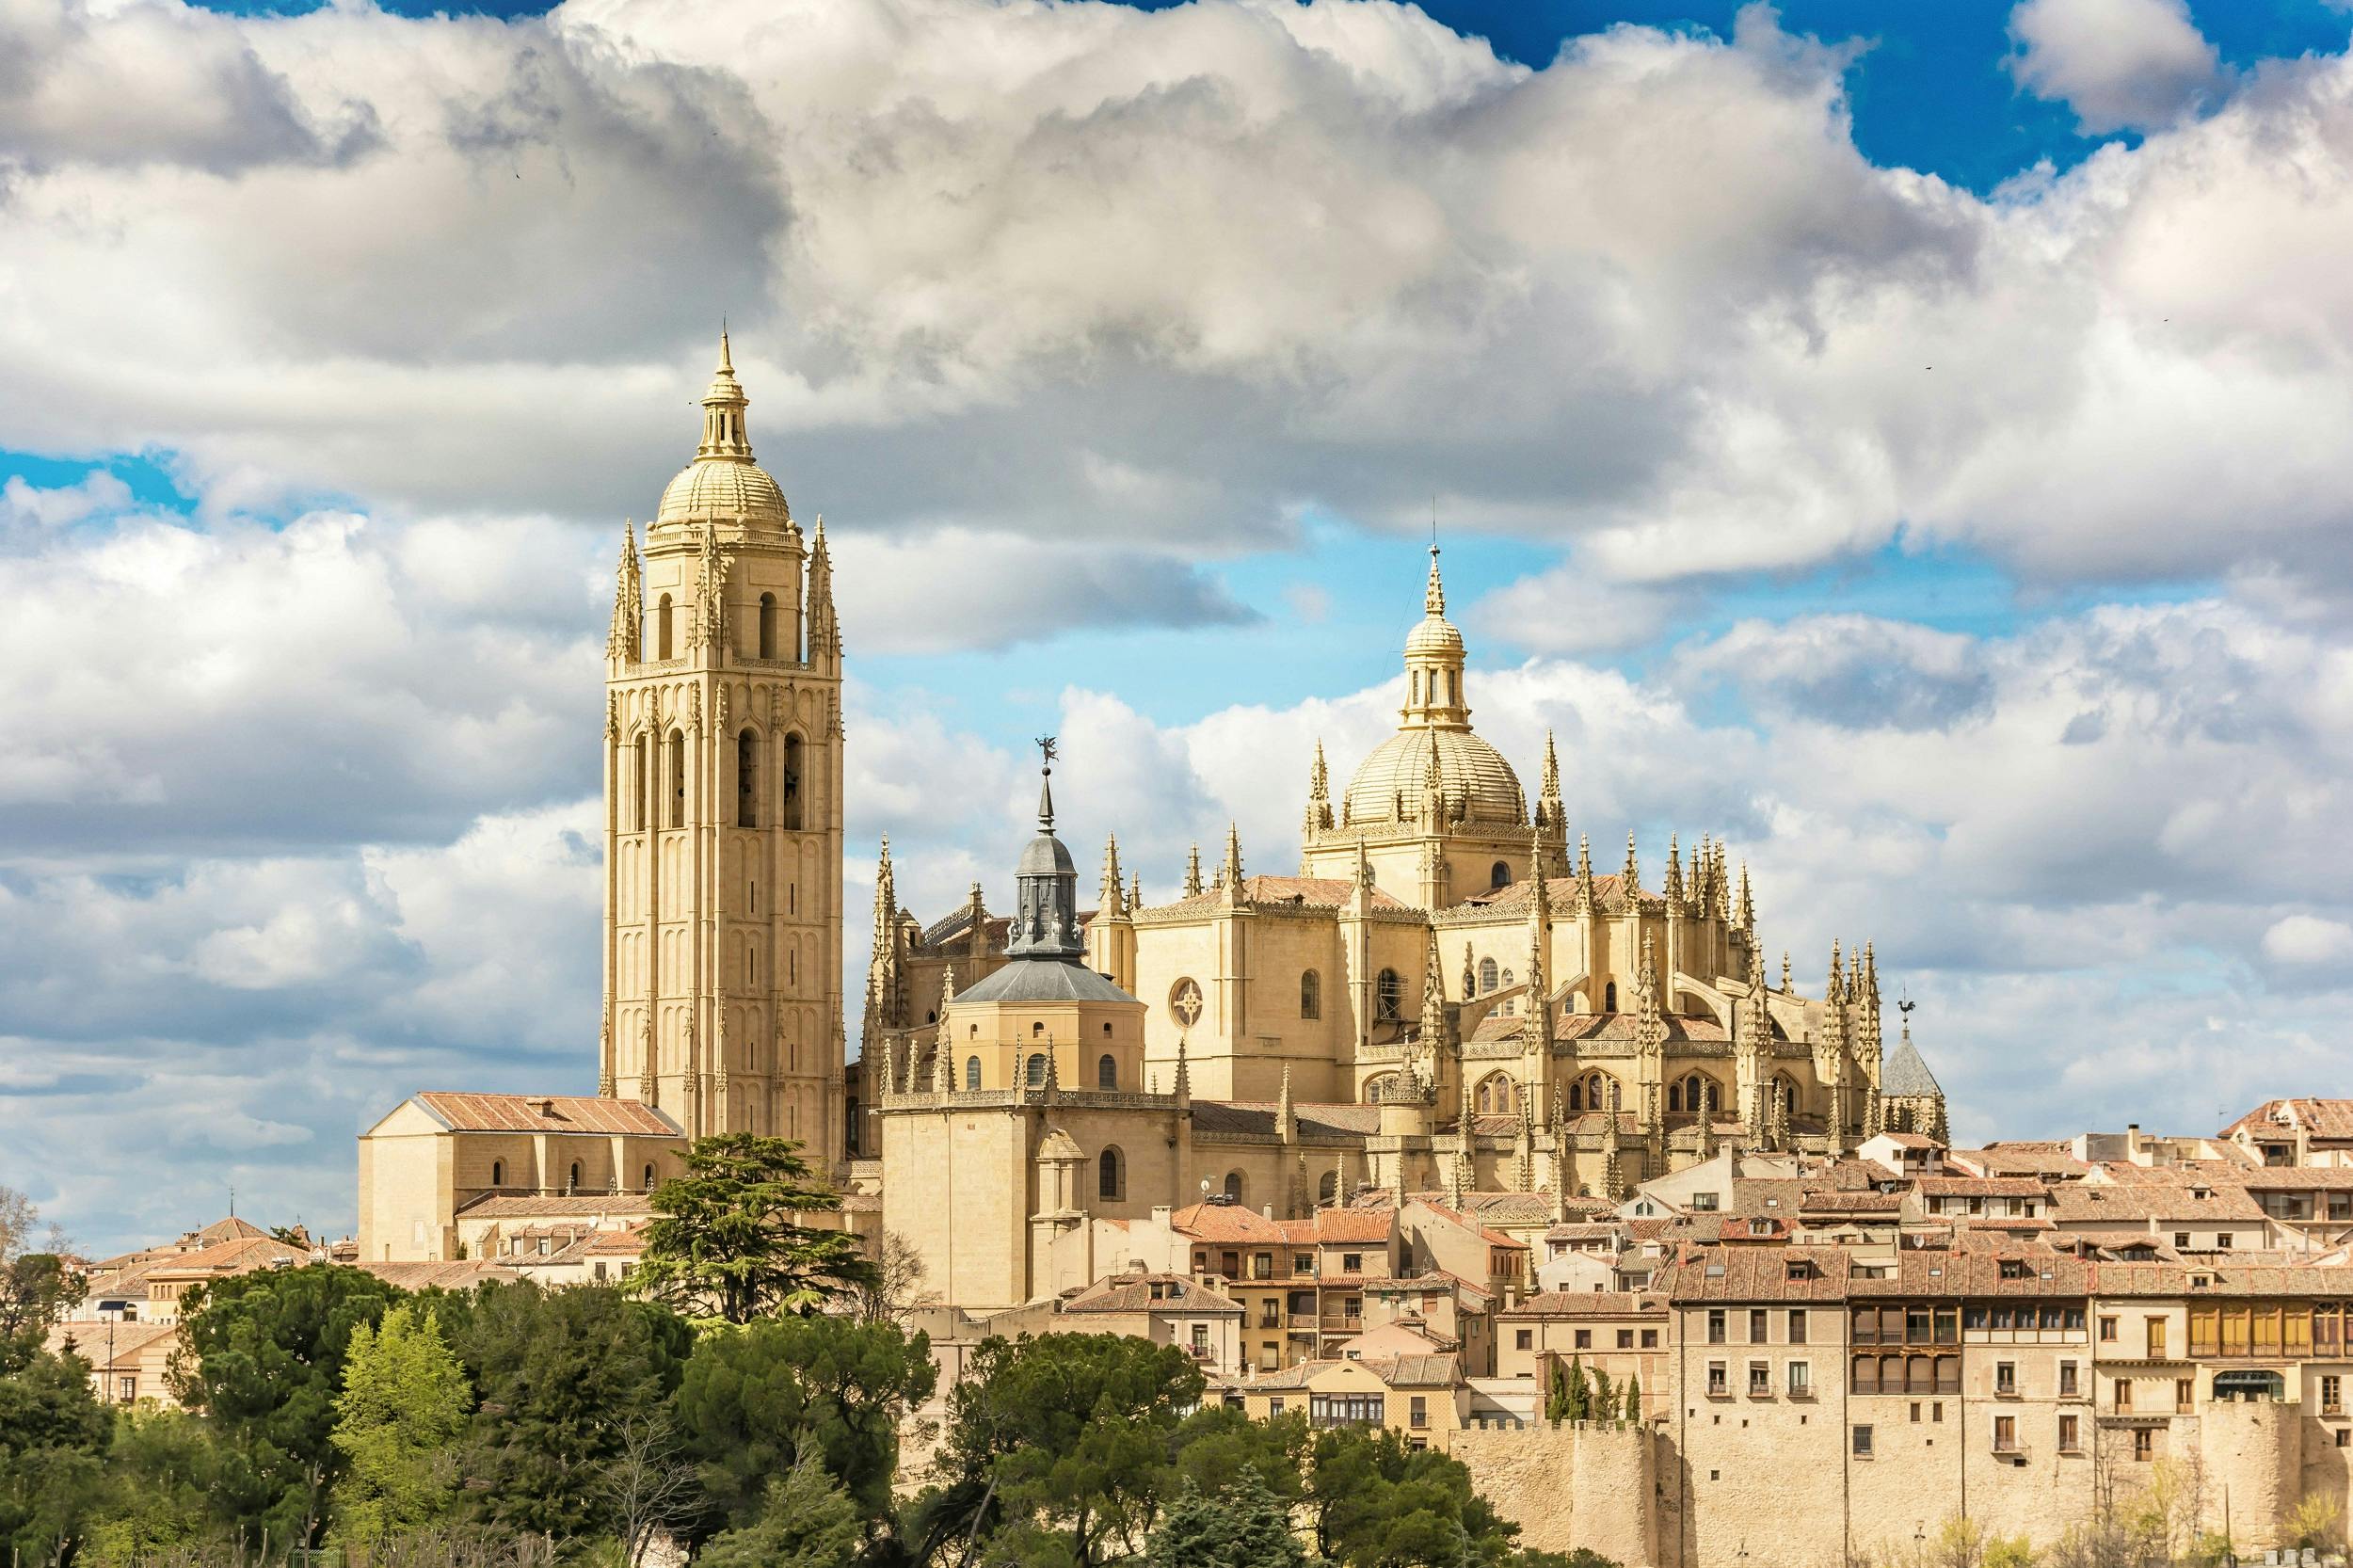 Toegangskaartje voor de kathedraal van Segovia